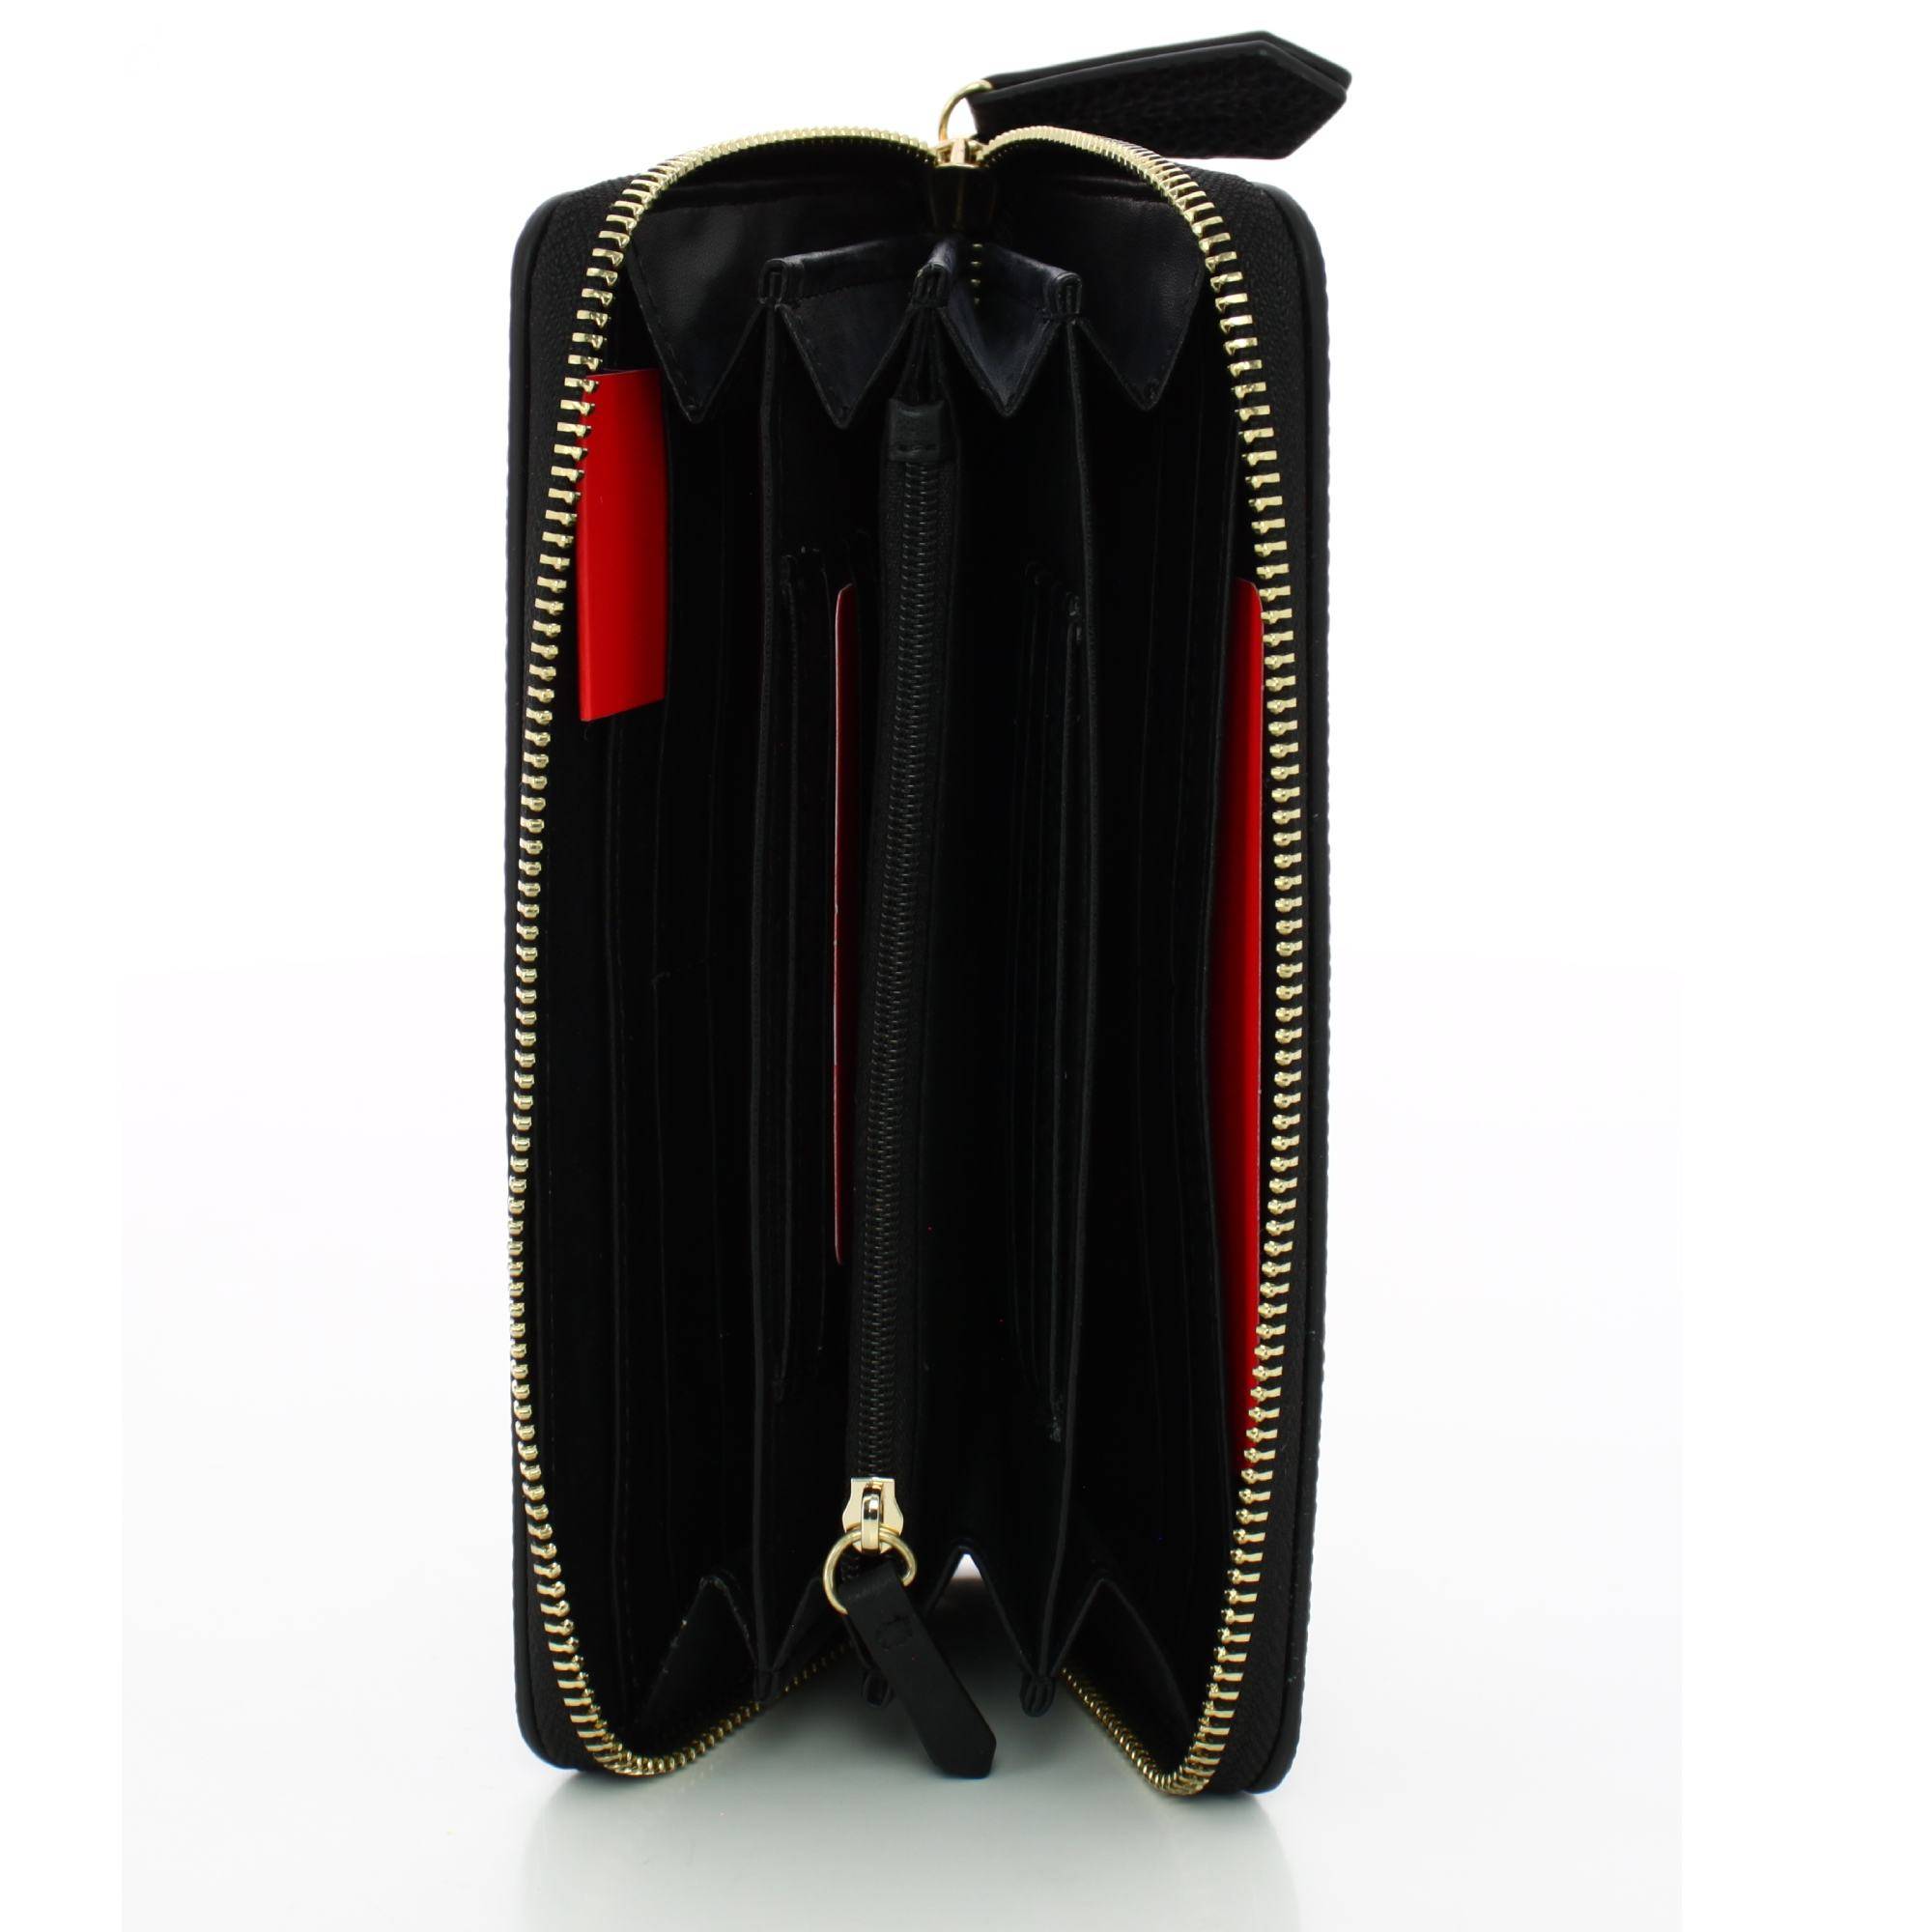 Grand portefeuille zippé Valentino femme VPS7QS155 001 couleur Noir, intérieur